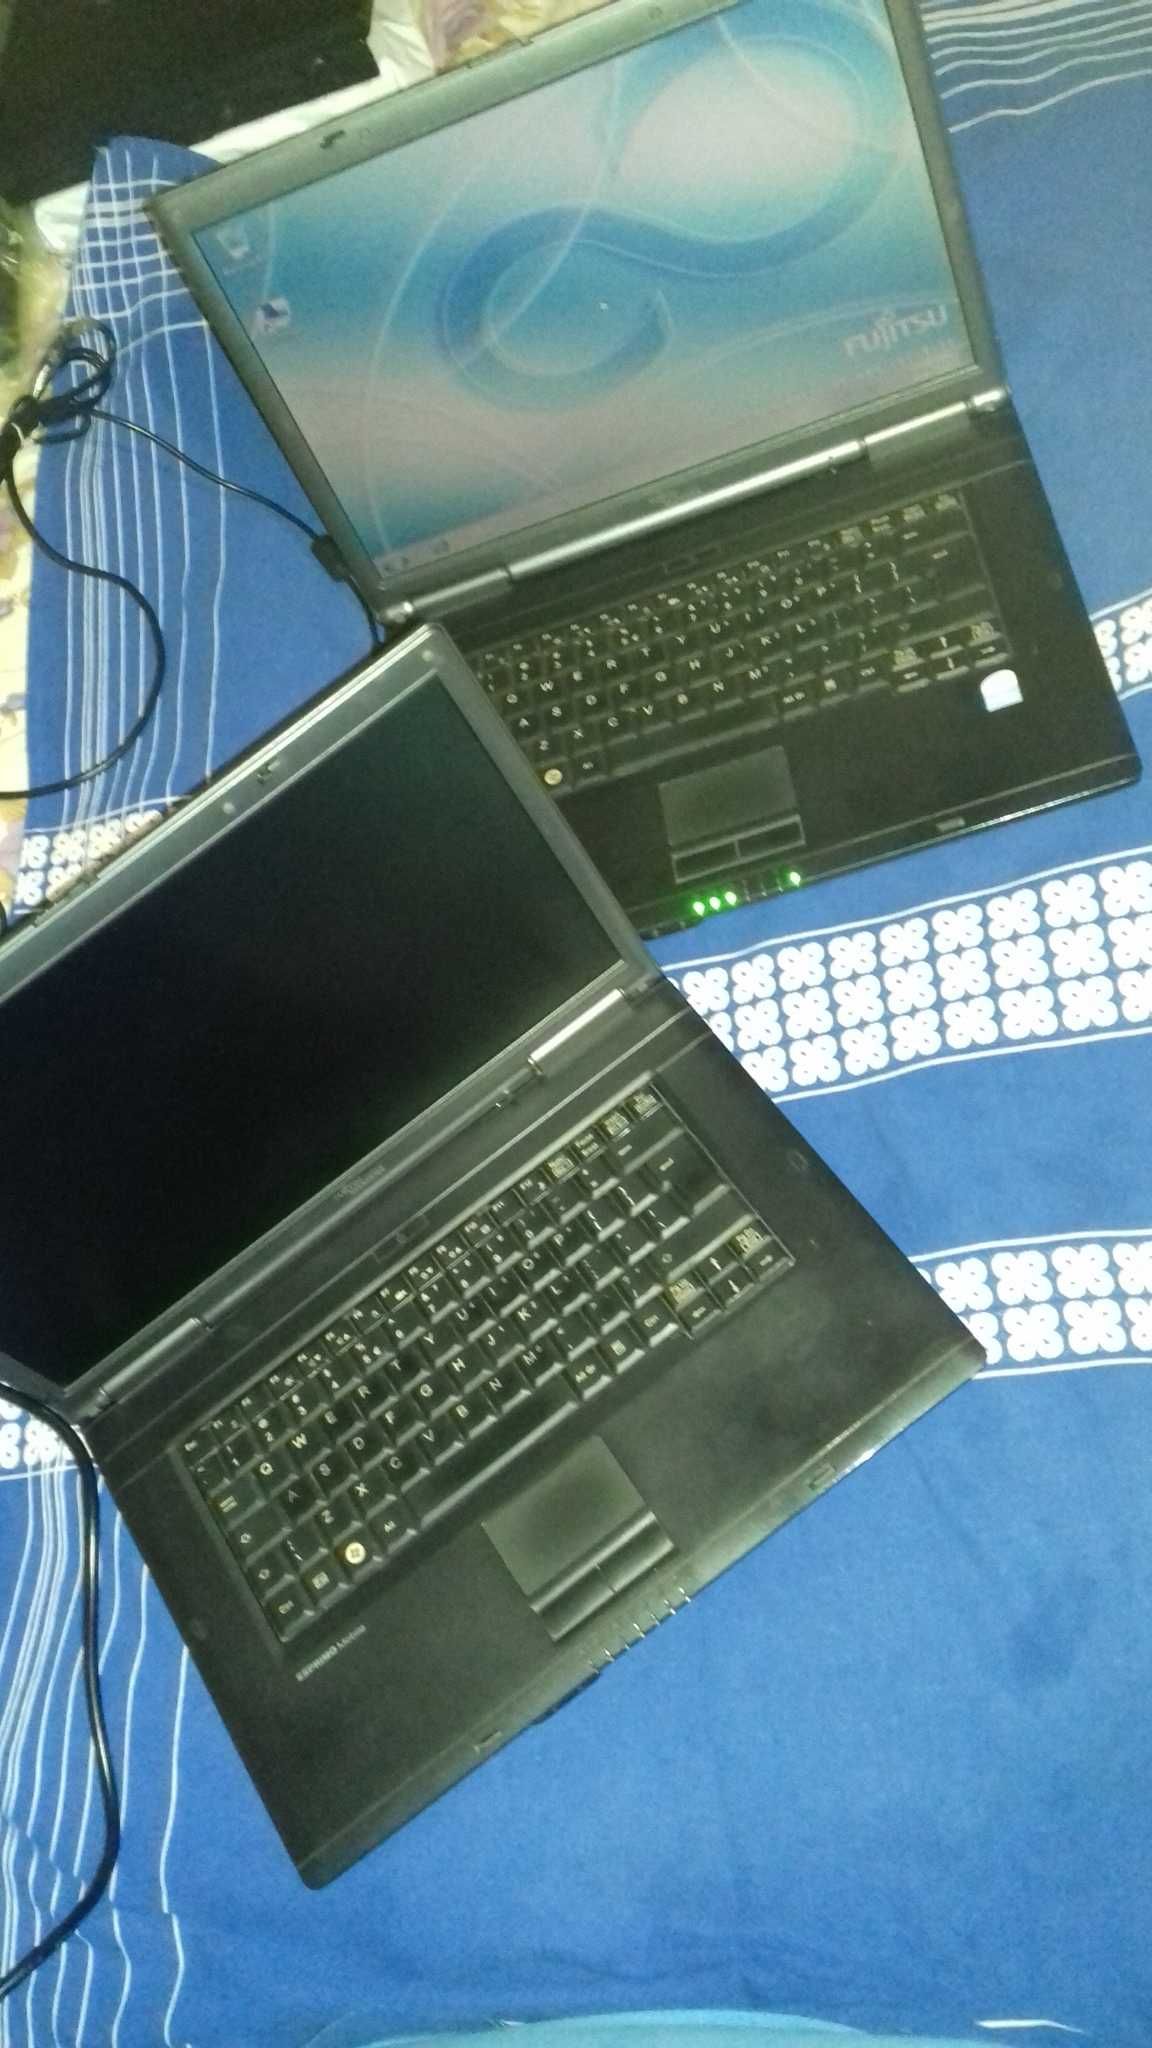 Laptopuri Fujitsu Esprimo Mobile V5535/V5515 si Acer Aspire 1650 funct